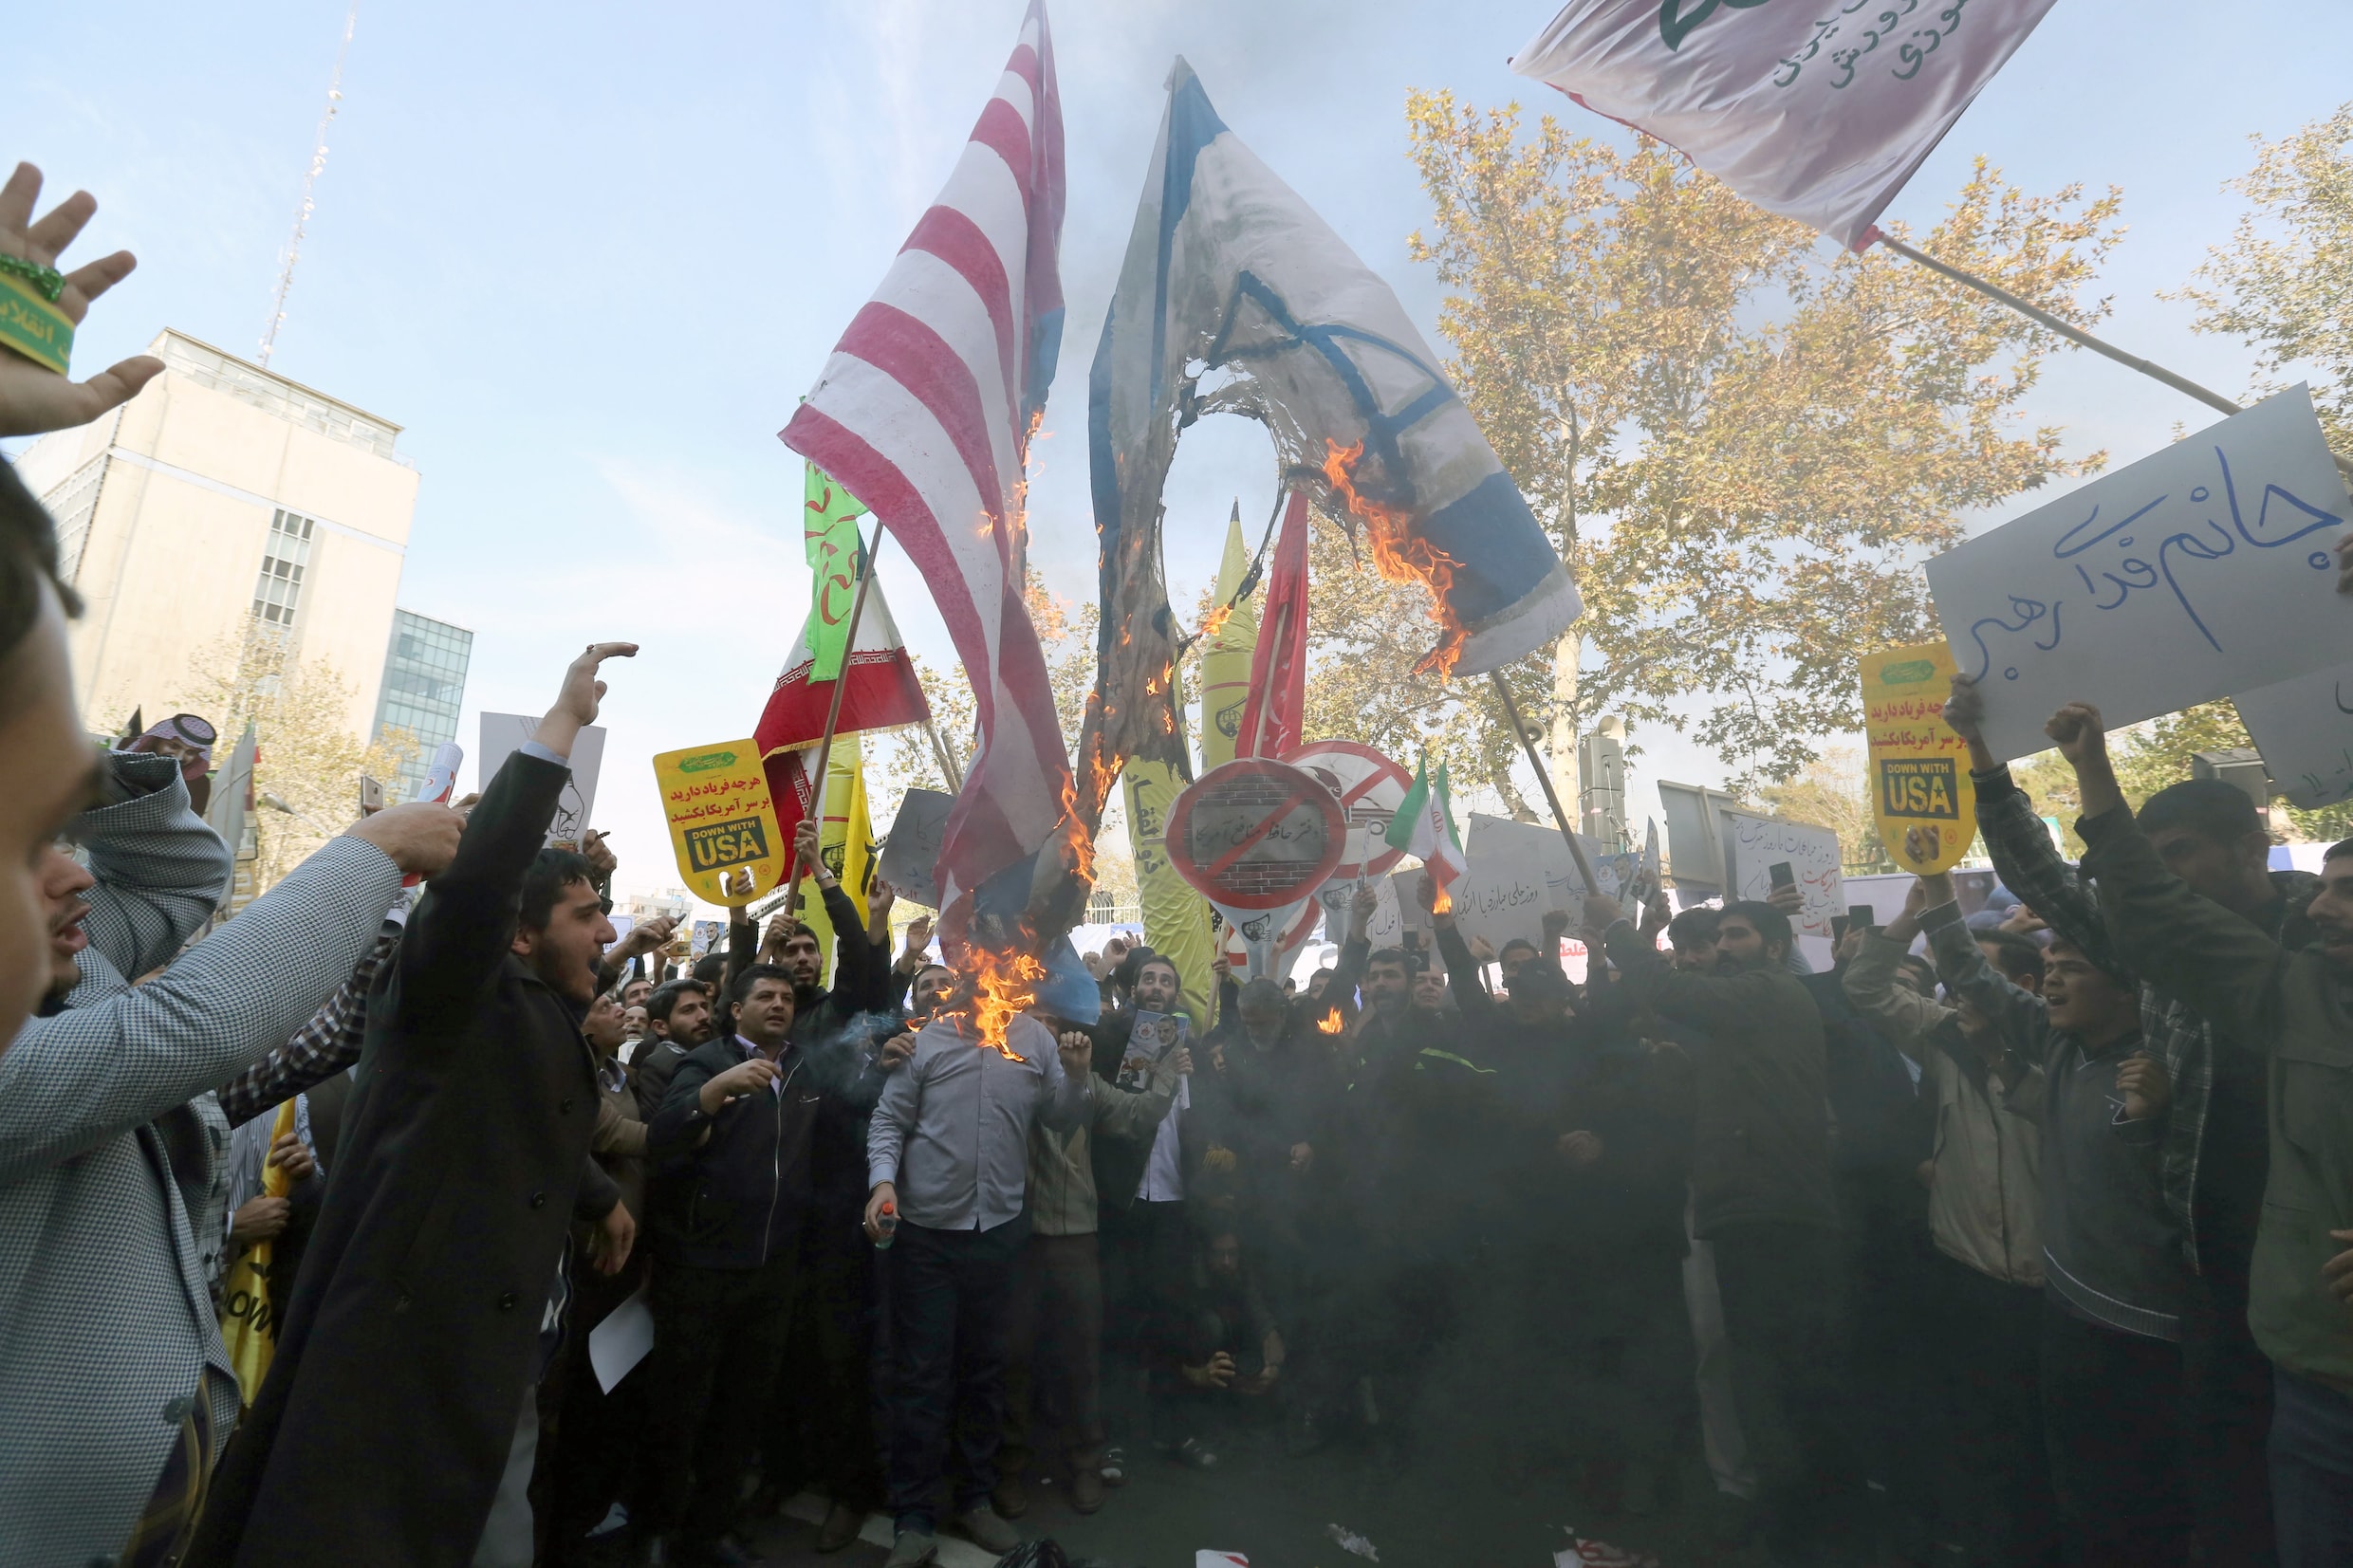 Tienduizenden Iraniërs protesteren tegen economische sancties VS